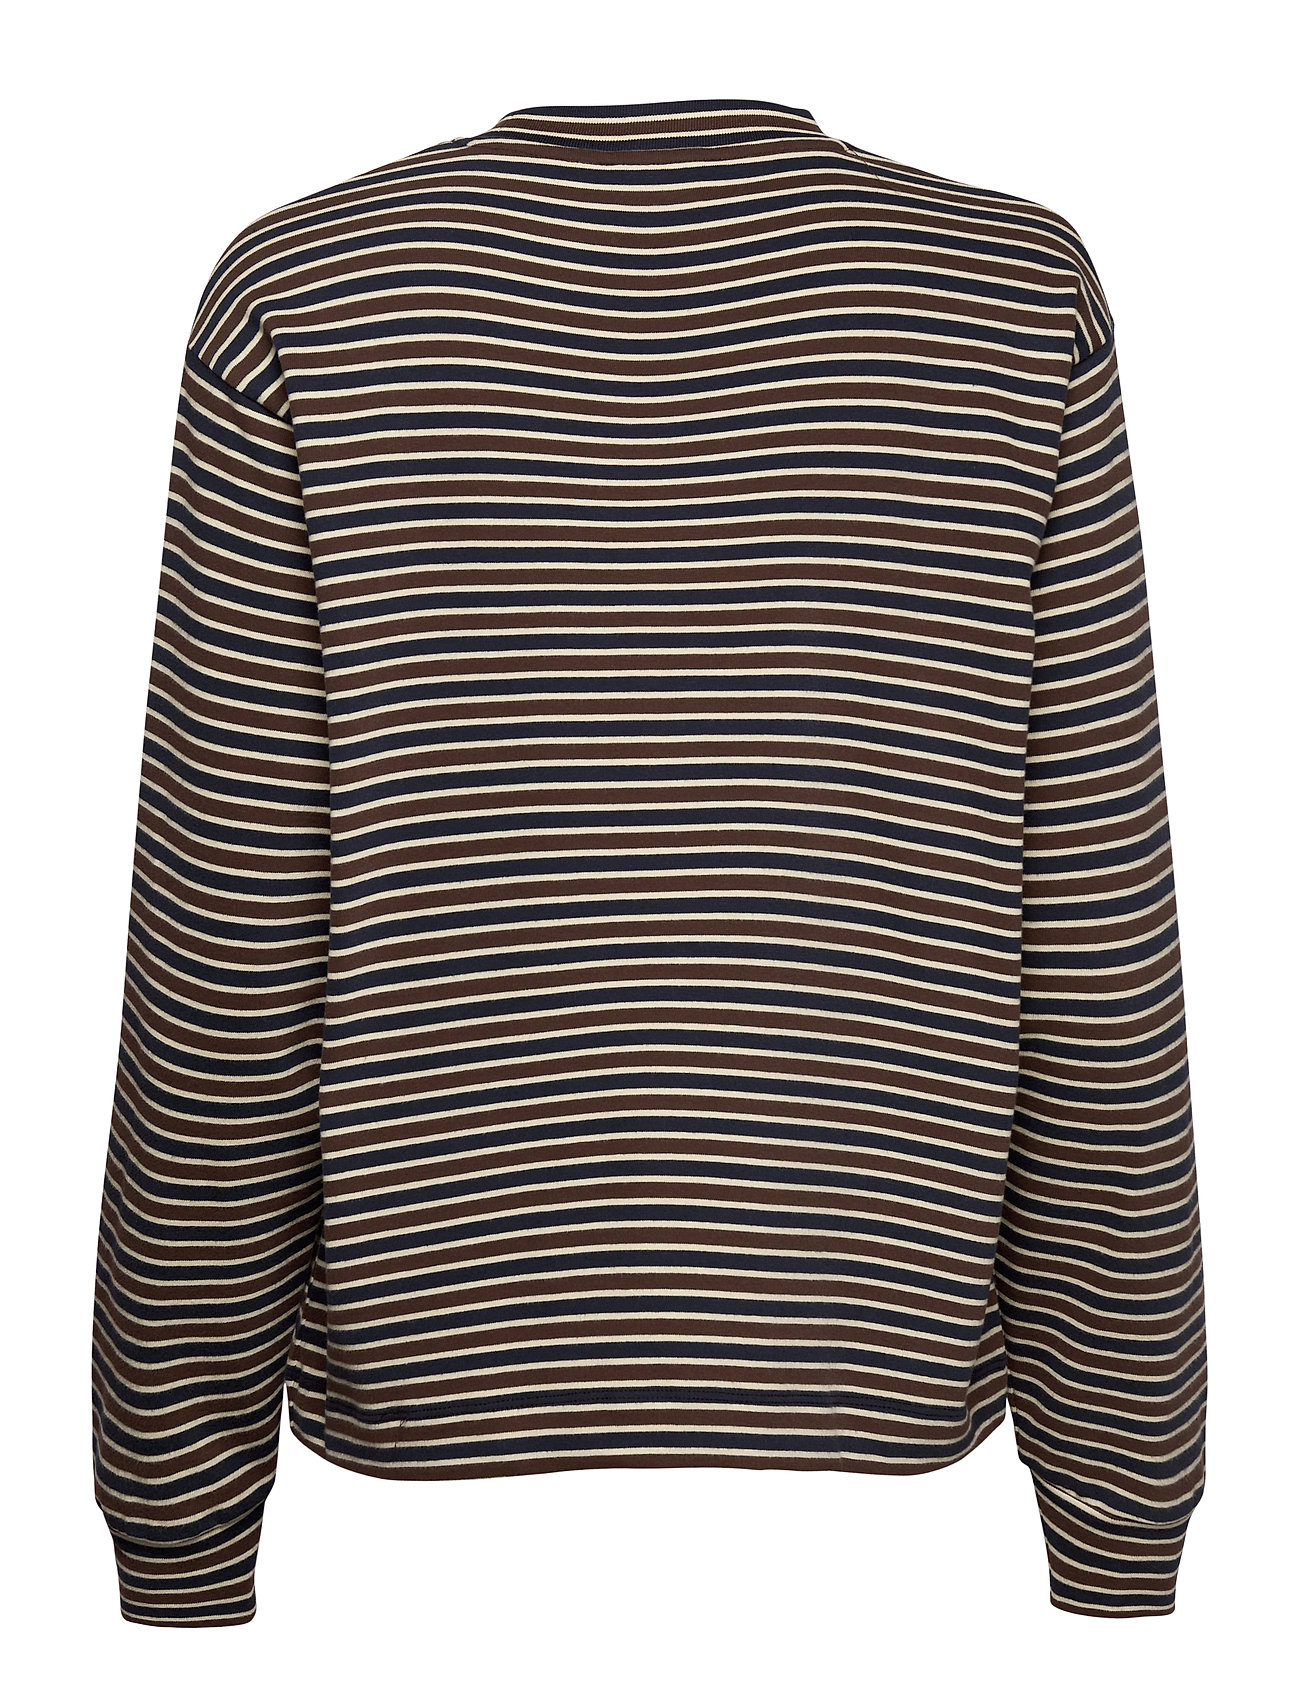 Wood Wood langærmede t-shirts & toppe – Astrid Long Sleeve Langærmet T-shirt Blå Wood til dame i Multifarvet - Pashion.dk